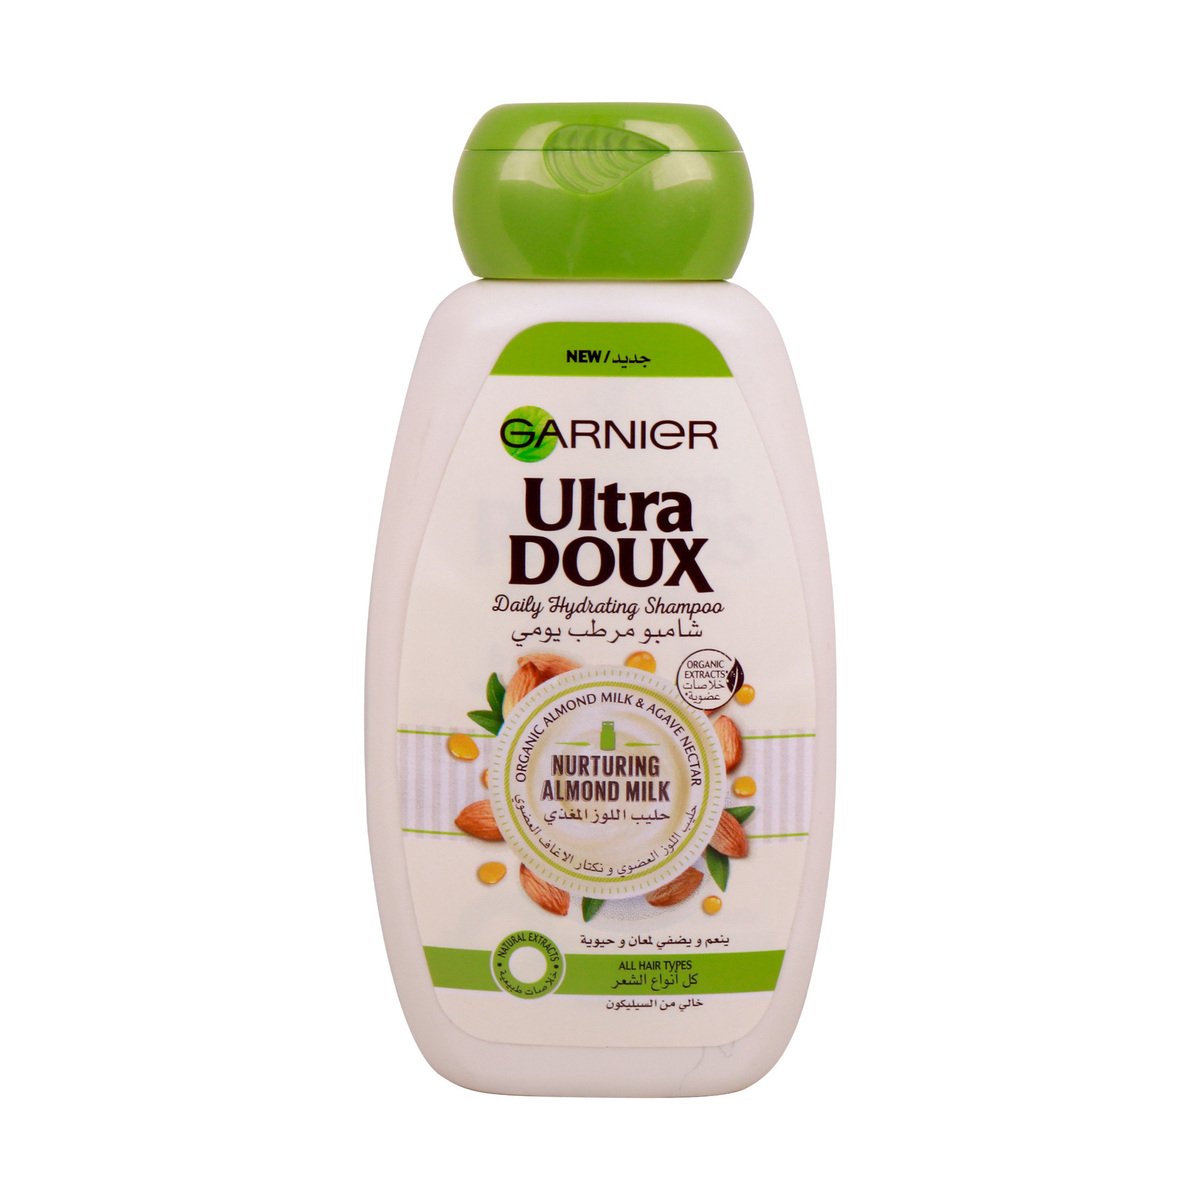 Garnier Ultra Doux Shampoo Nurturing Almond Milk 250ml